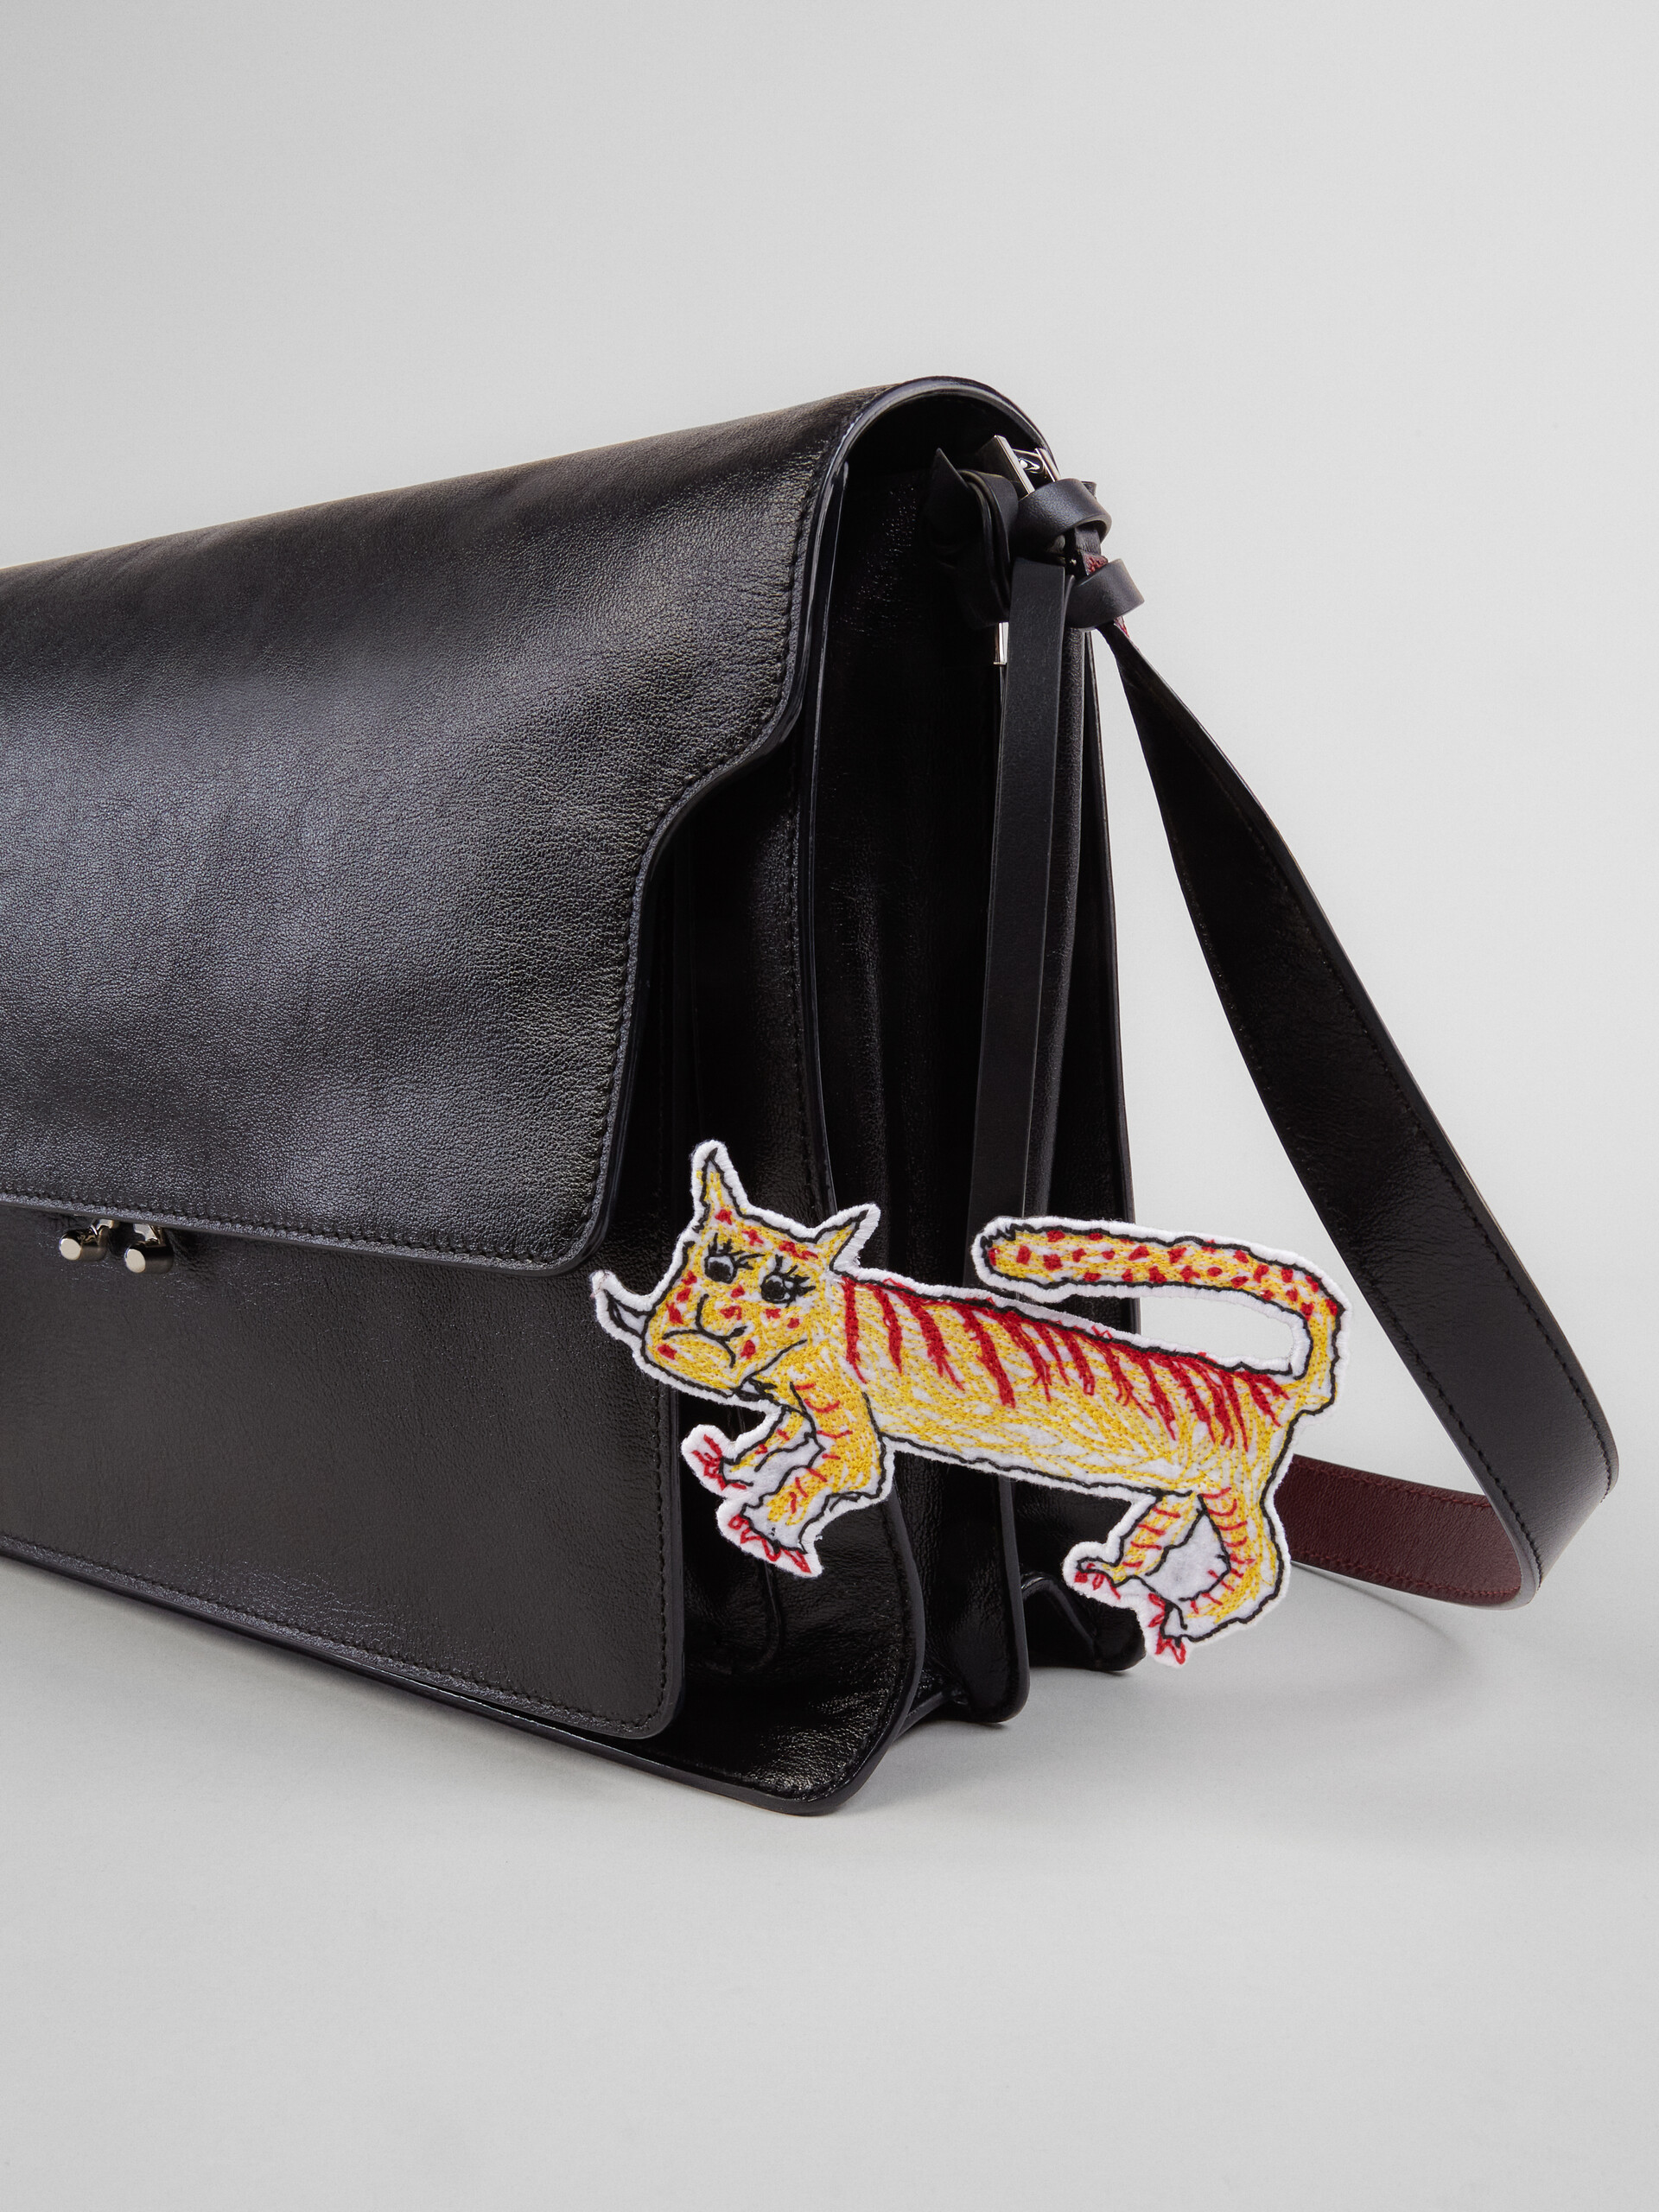 Calf leather TRUNK SOFT bag - Shoulder Bag - Image 4